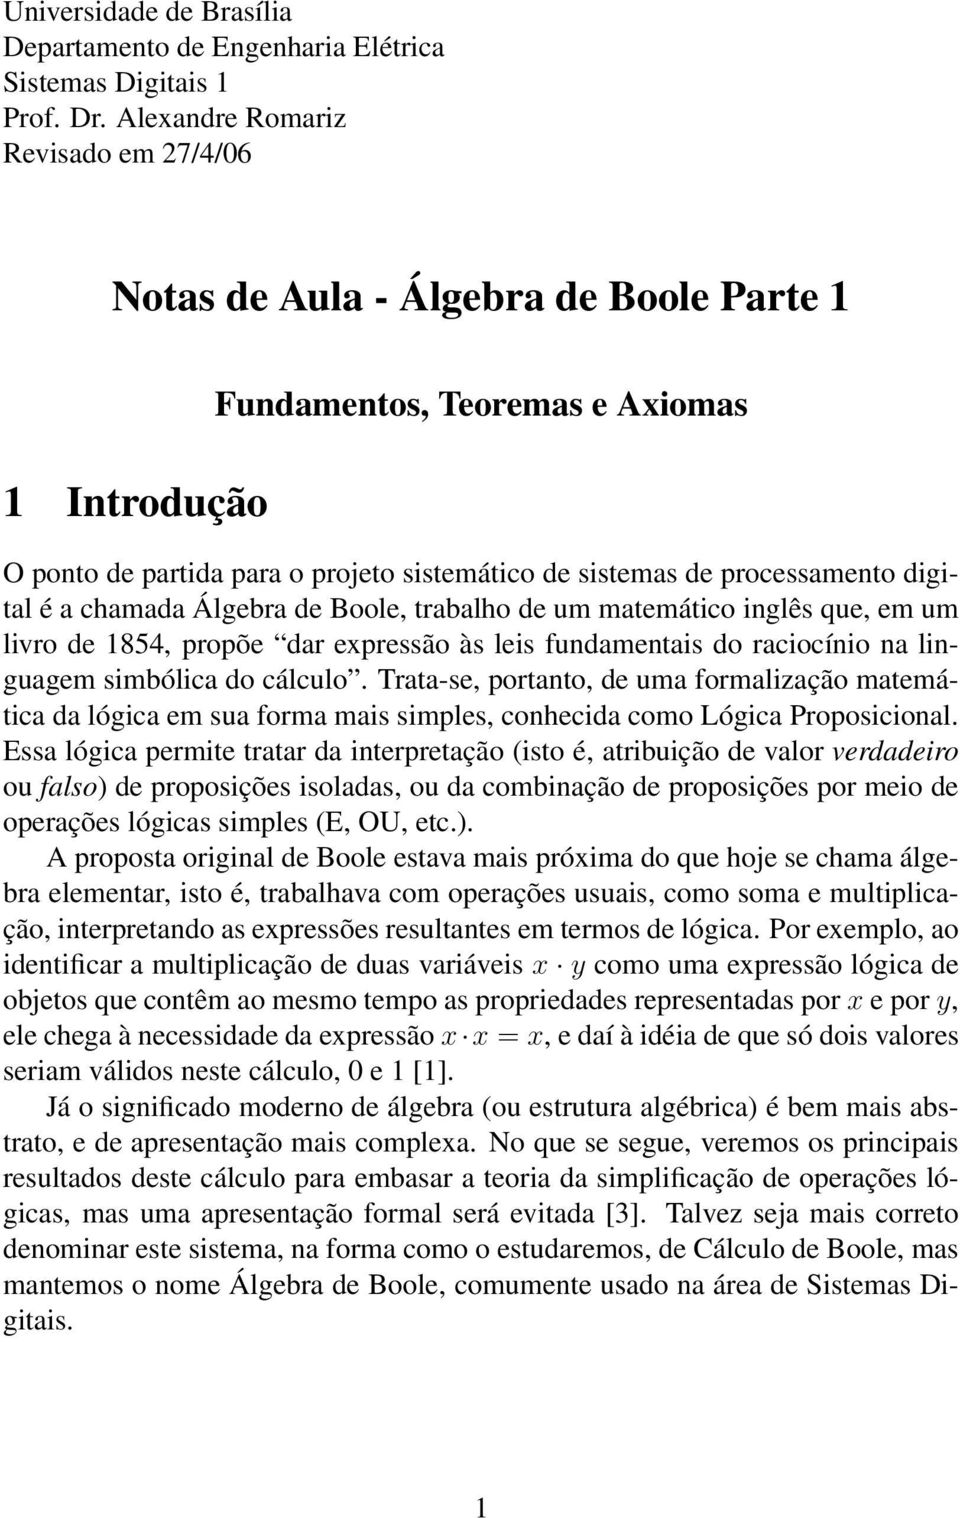 digital é a chamada Álgebra de Boole, trabalho de um matemático inglês que, em um livro de 1854, propõe dar expressão às leis fundamentais do raciocínio na linguagem simbólica do cálculo.